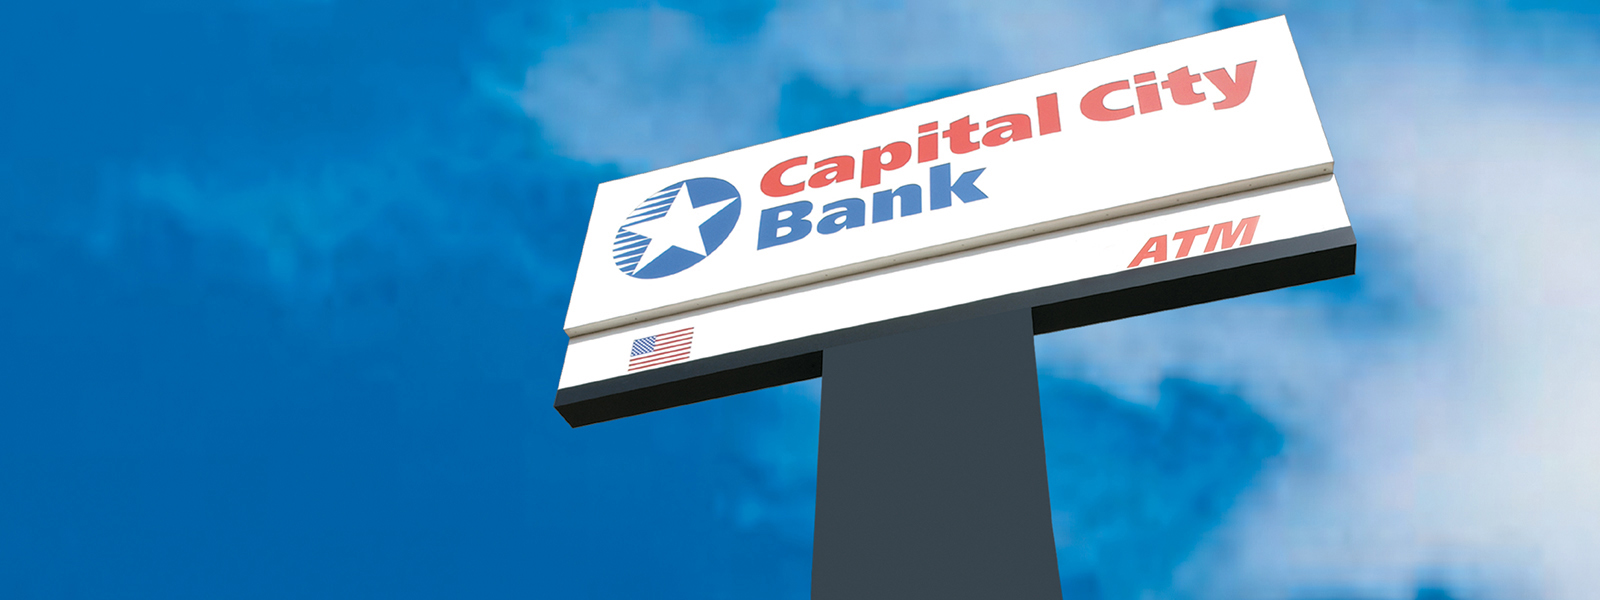 Meet the Leadership at Capital City Bank